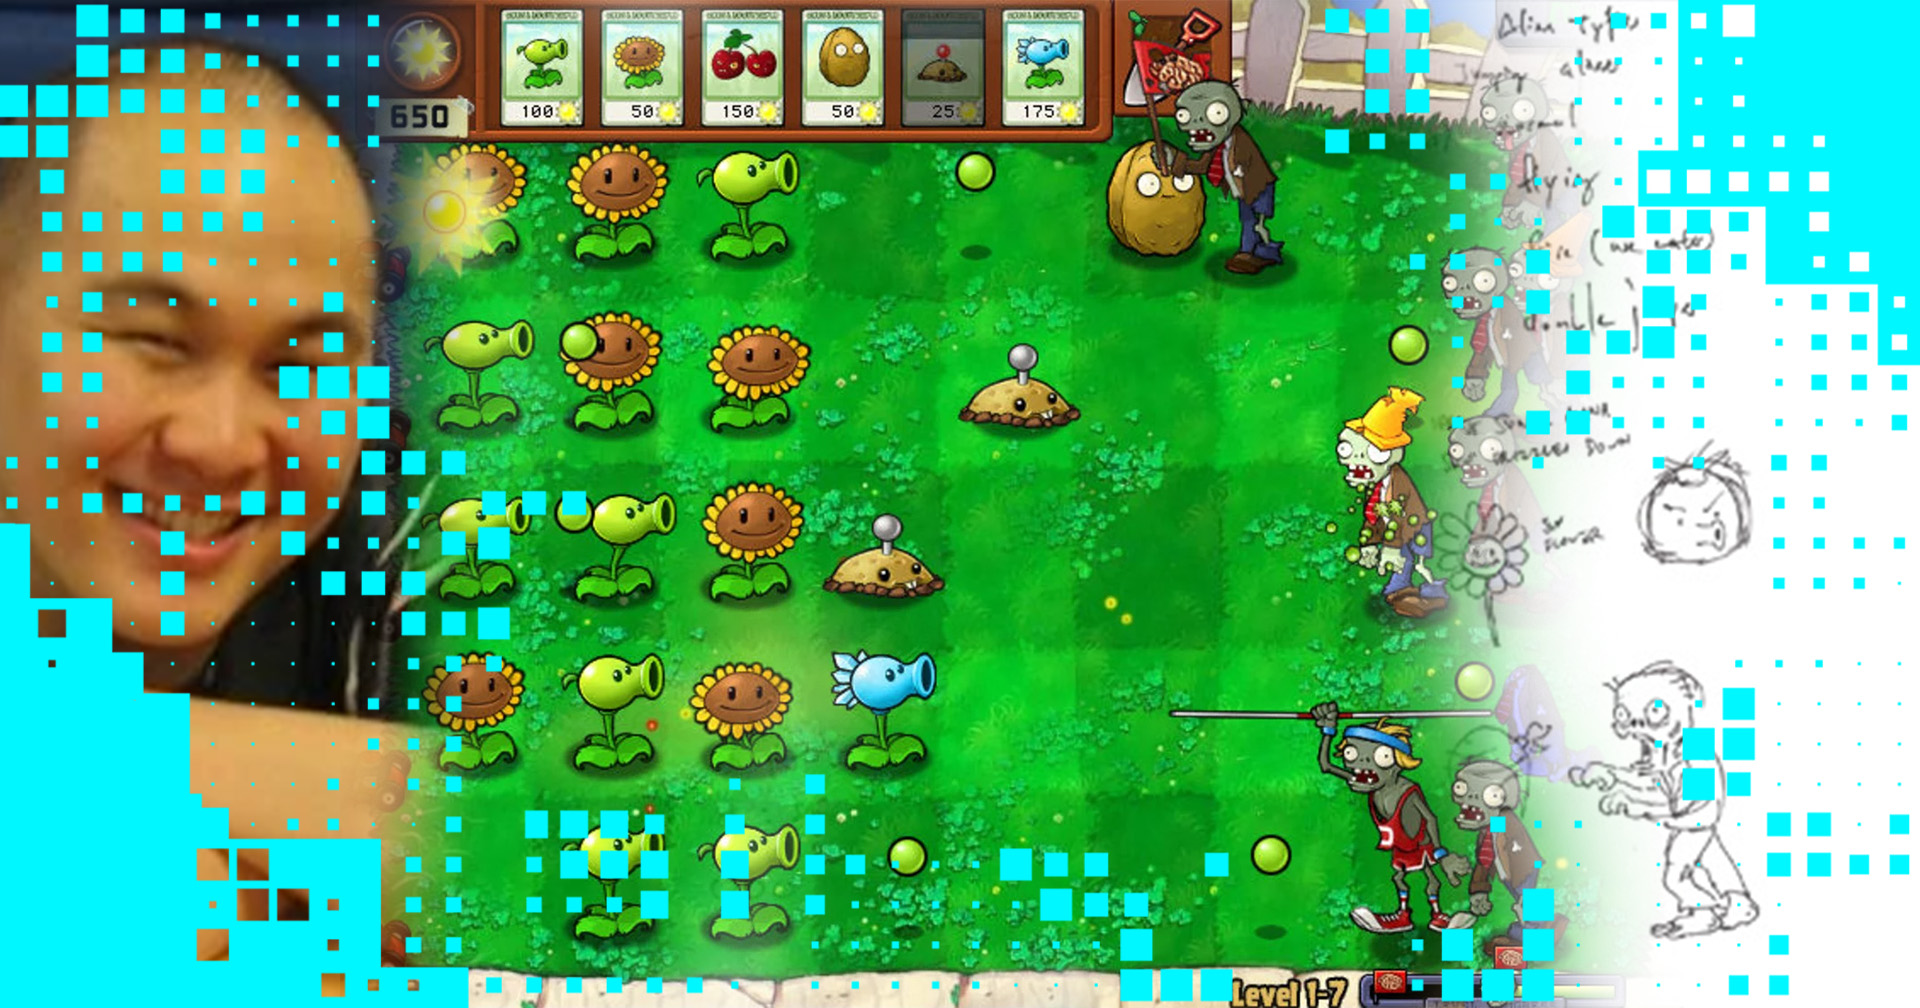 ประวัติ Plants vs Zombies เกมที่ผู้สร้างขอลาเพราะแนวคิดไม่ตรงกับนายทุน